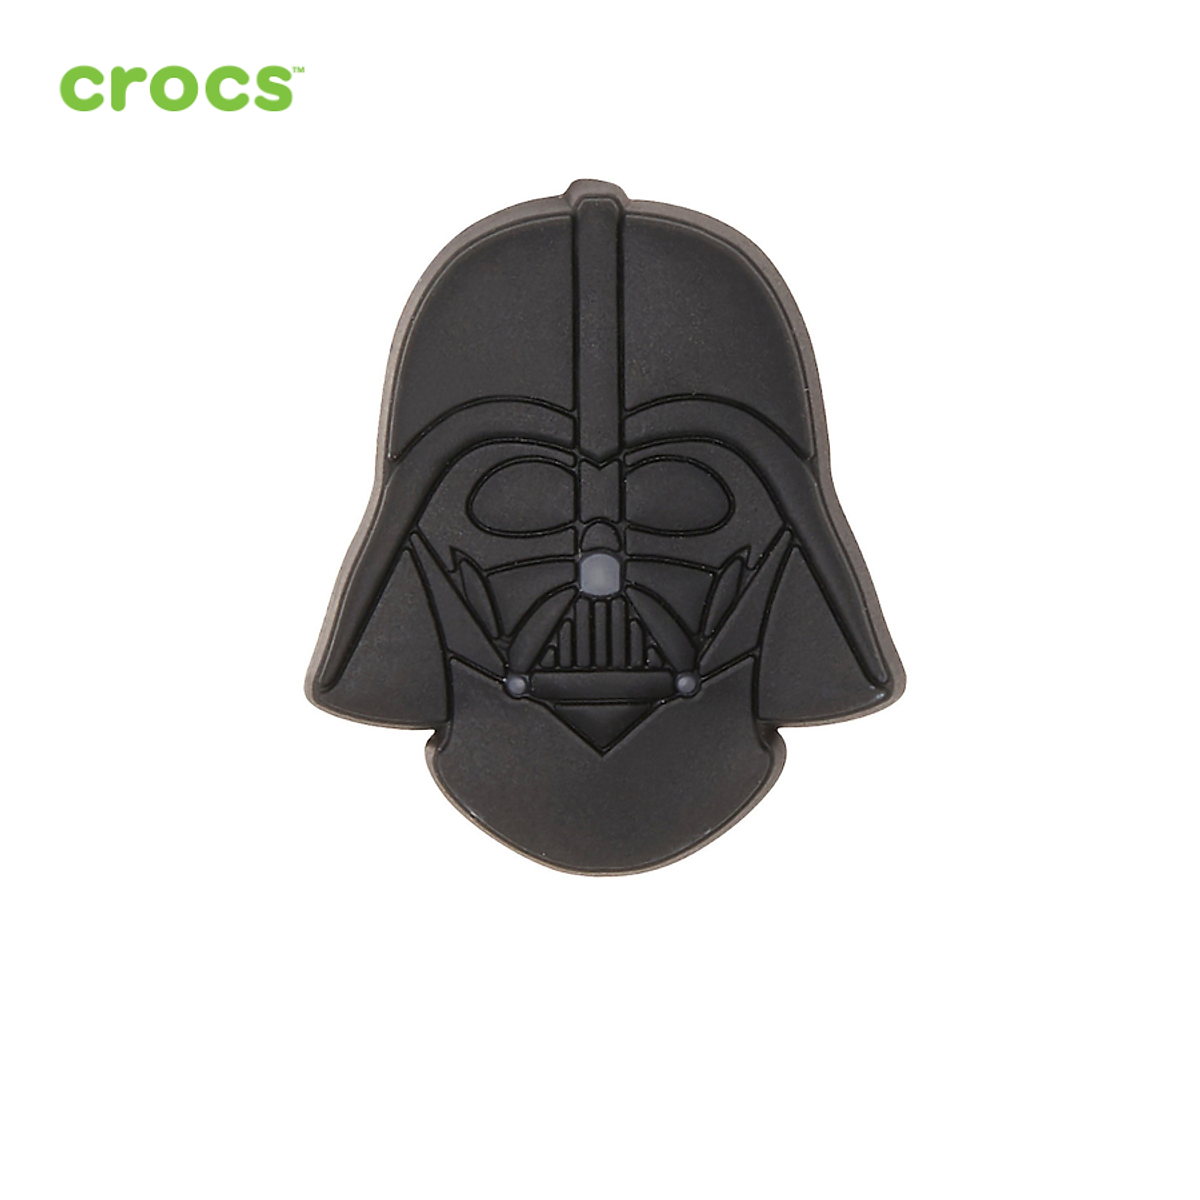 Mua Huy hiệu jibbitz unisex Crocs Star Wars Darth Vader Helmet - 10007238  (1 pcs) - MULTI - 1 pcs tại Supersports Vietnam